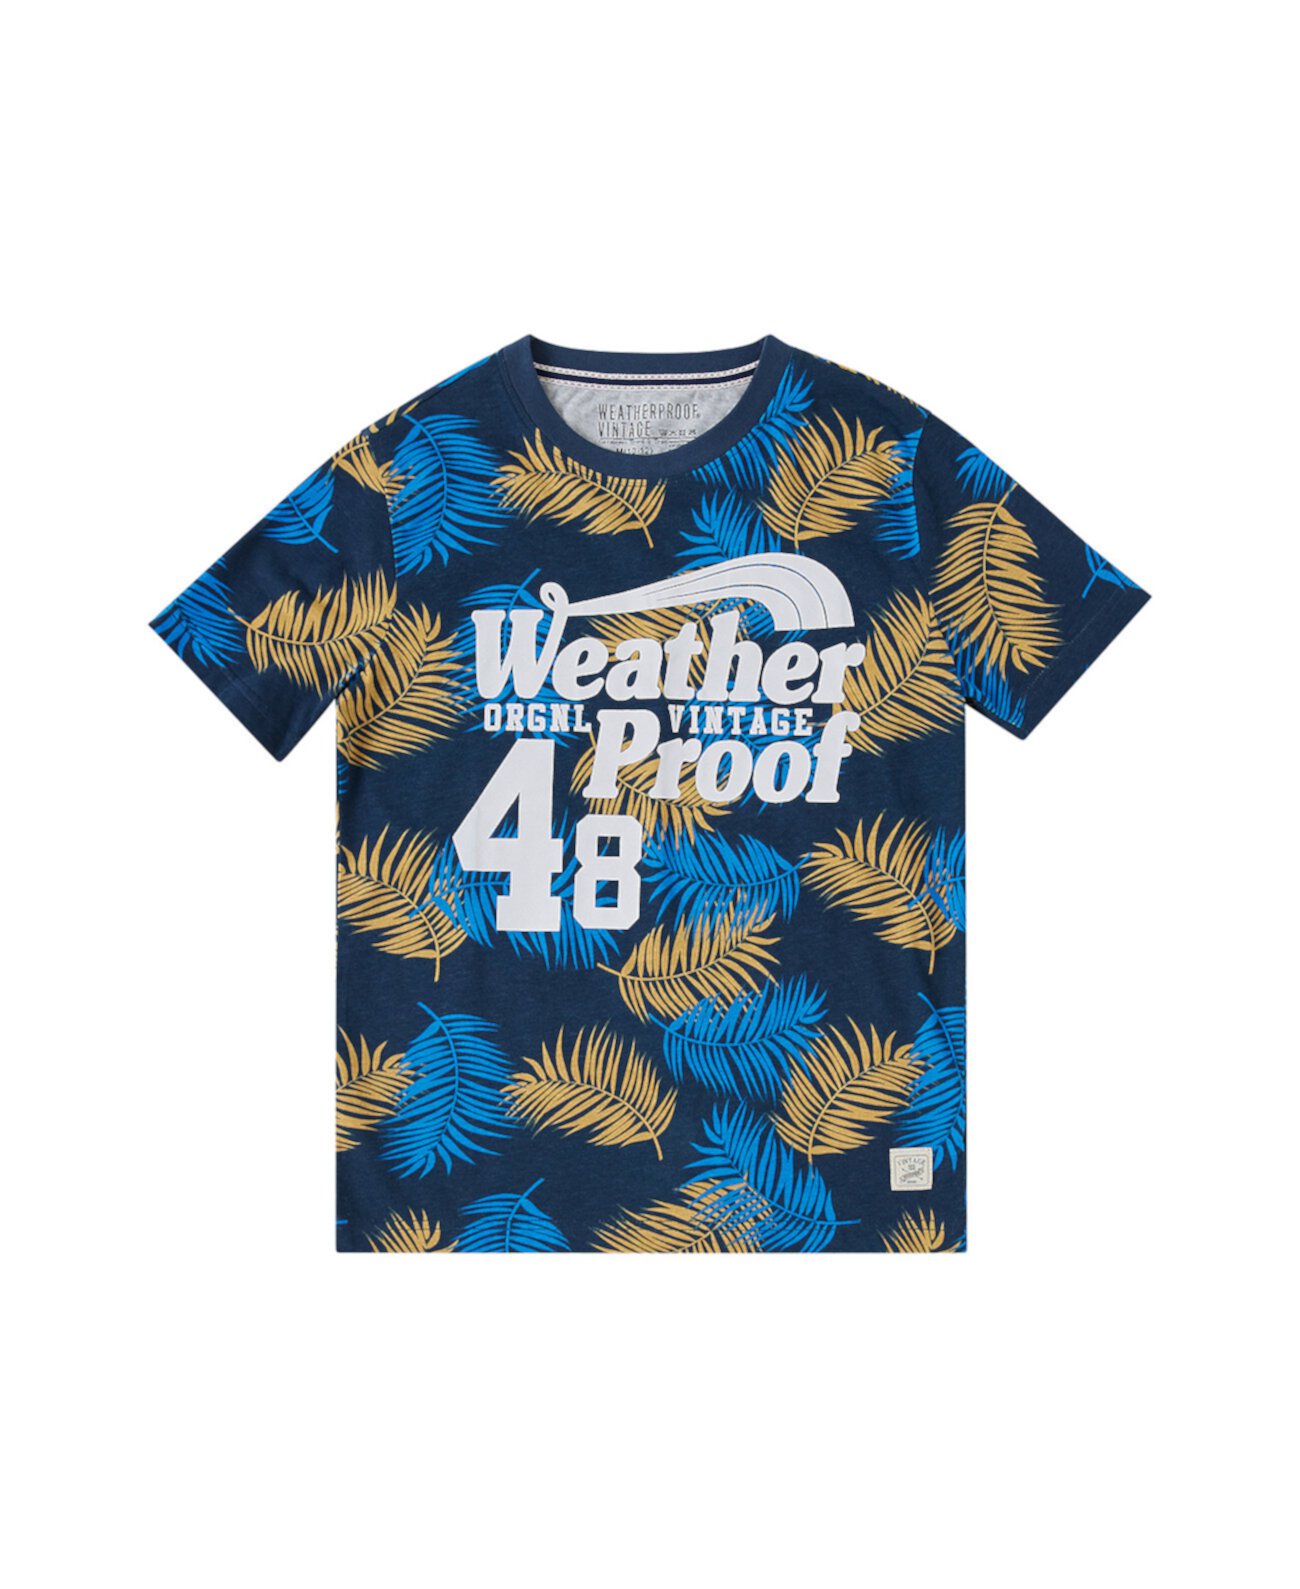 Всепогодная футболка с короткими рукавами и рисунком для больших мальчиков Big Boys Weatherproof Vintage